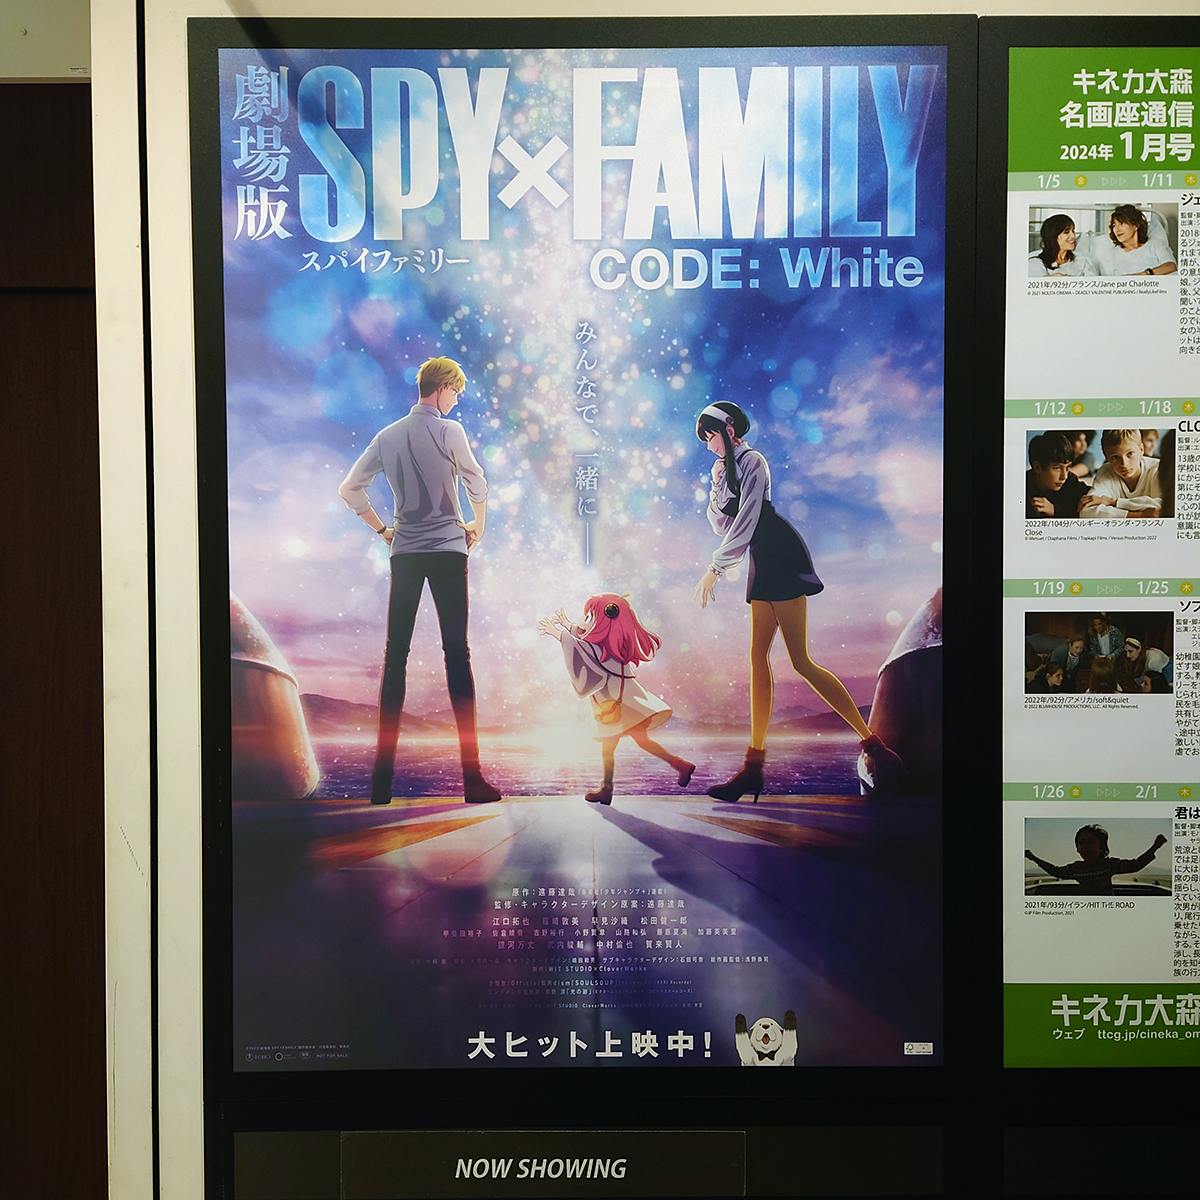 『劇場版 SPY×FAMILY CODE: White』のポスター(1)